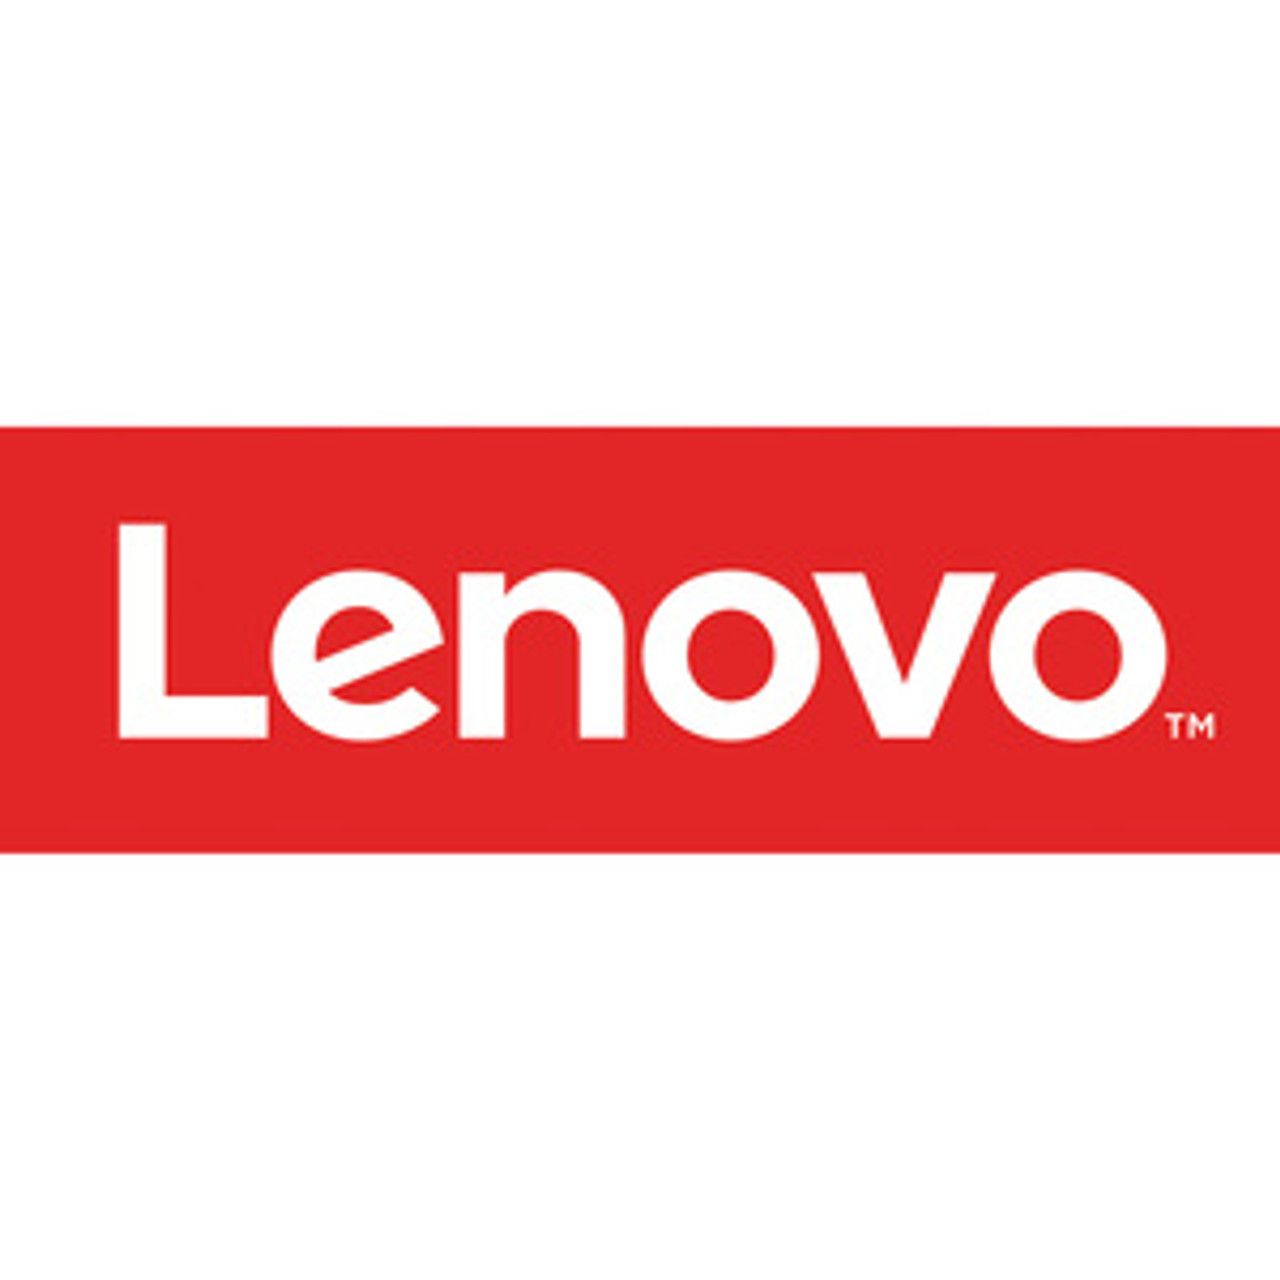 Lenovo GEN3TEAMSSMALLRM